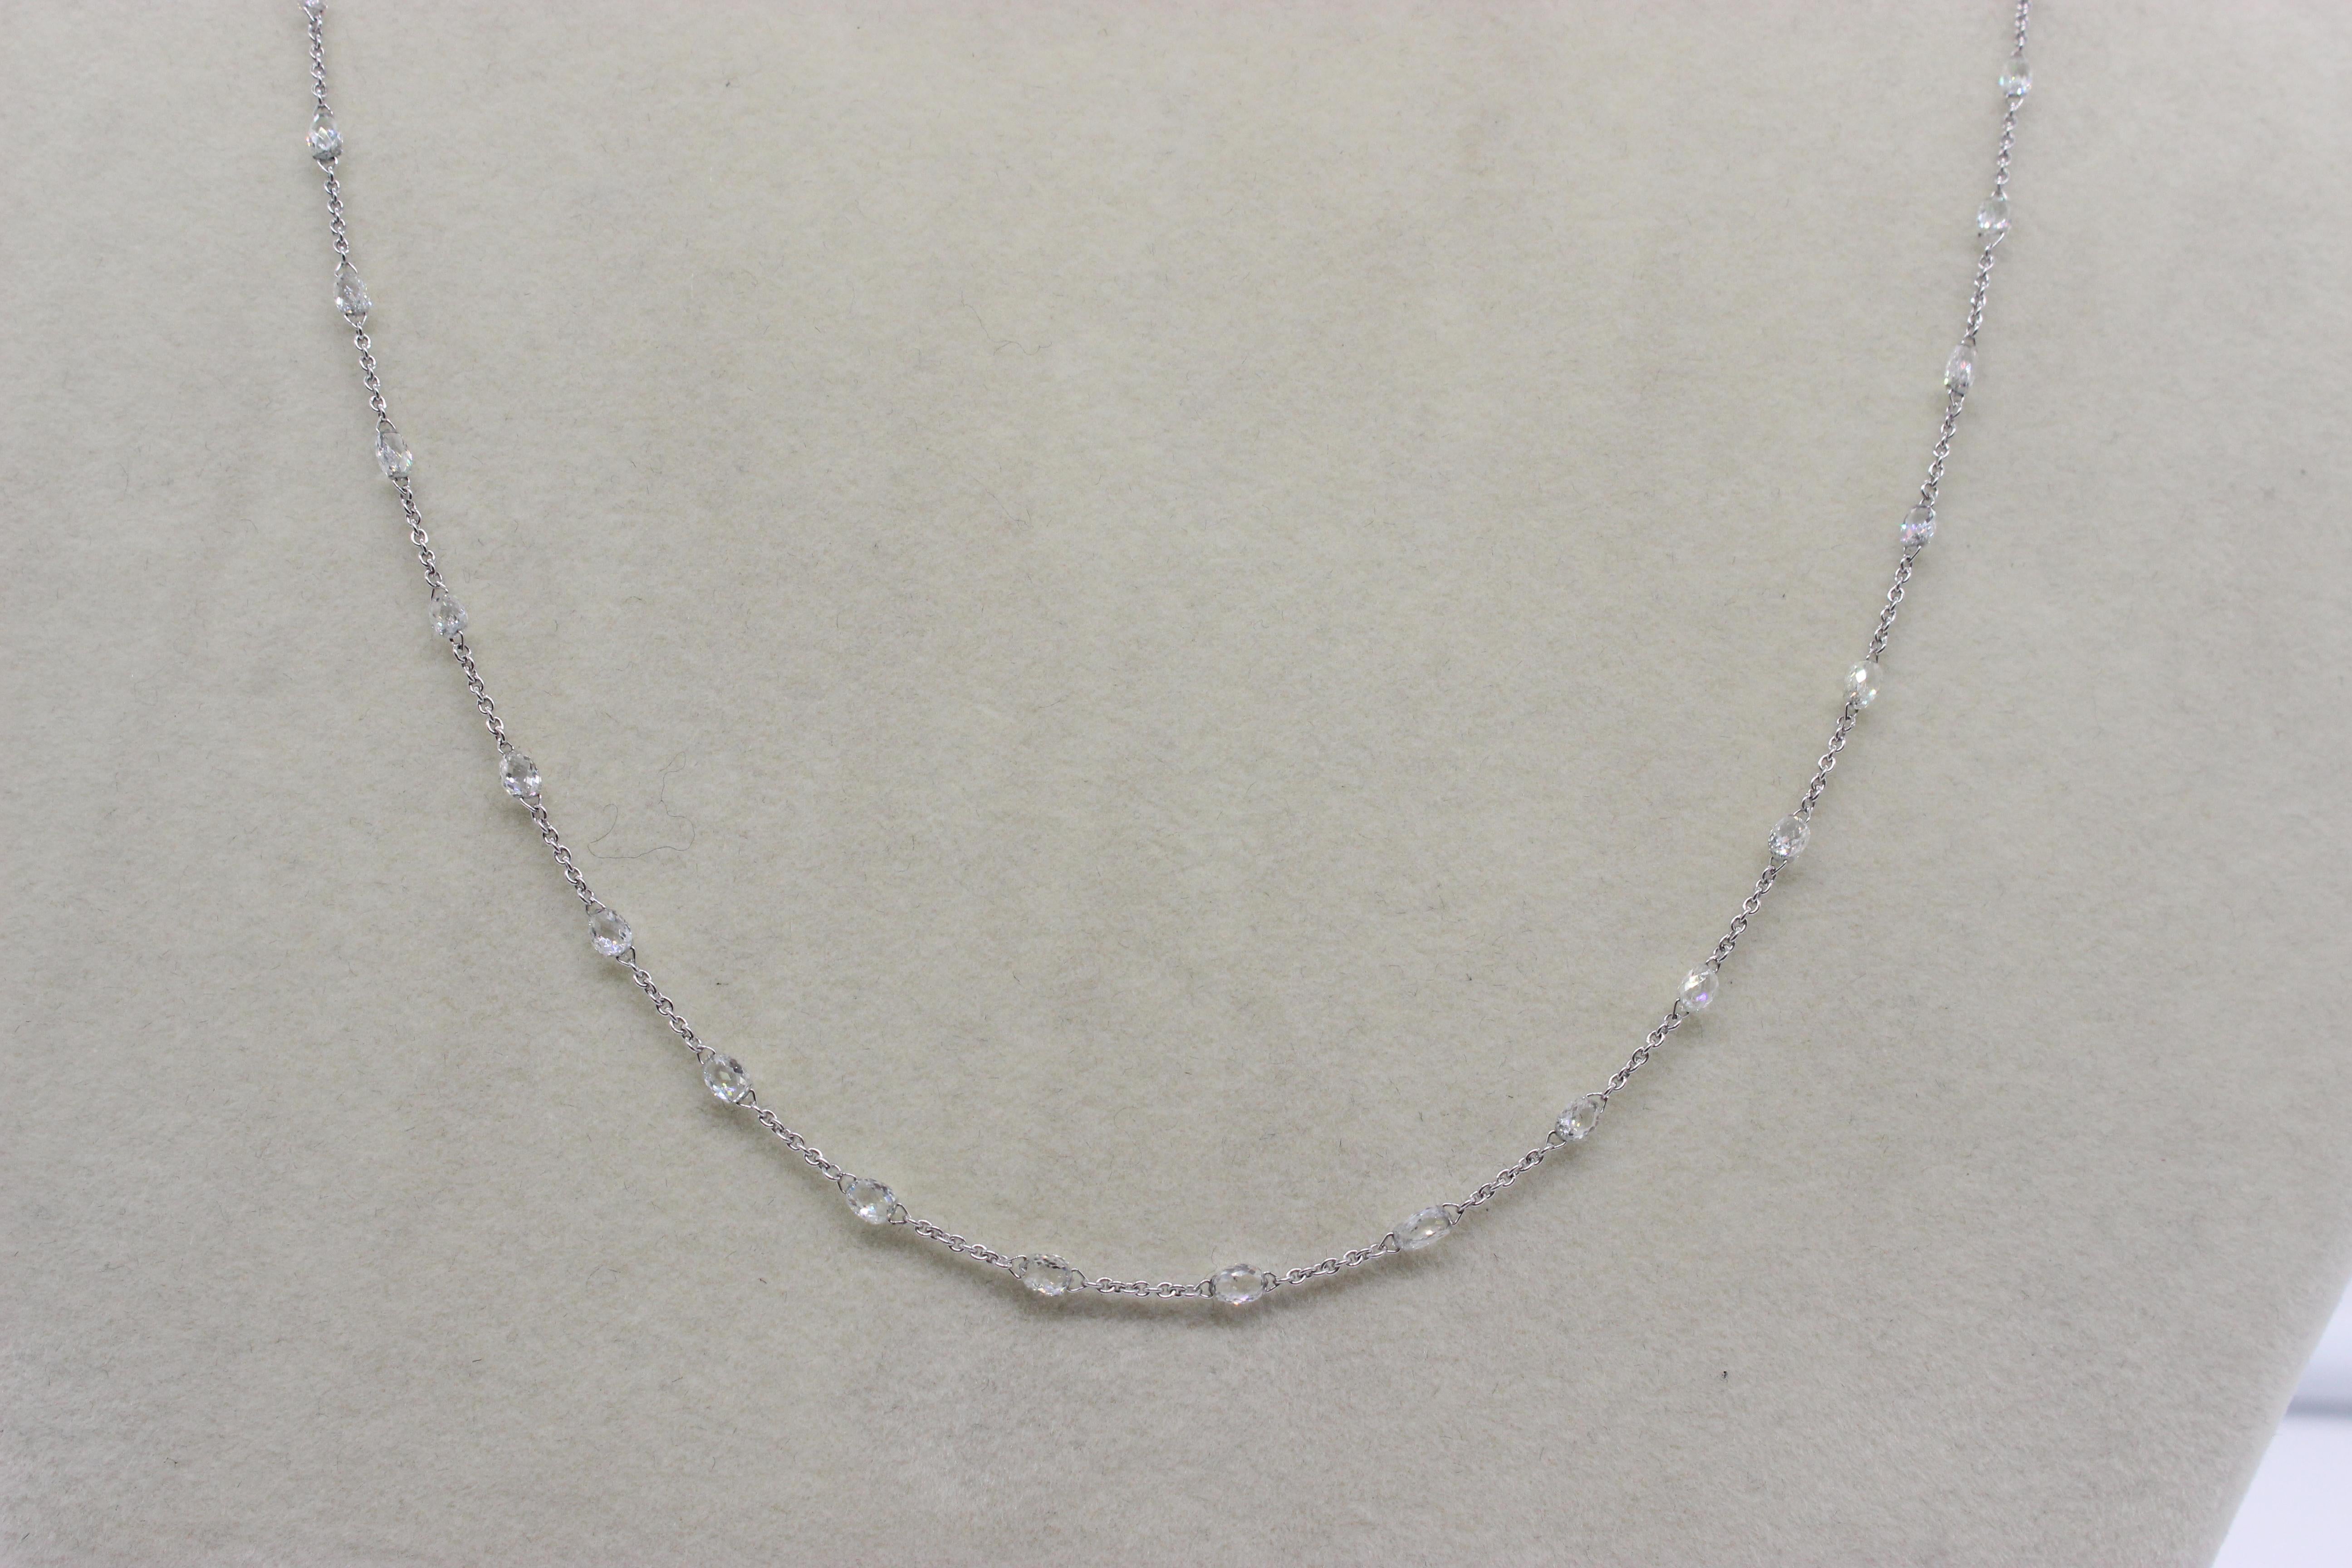 Panim 5.72 Carats Briolette Diamonds 18k White Gold Necklace For Sale 2